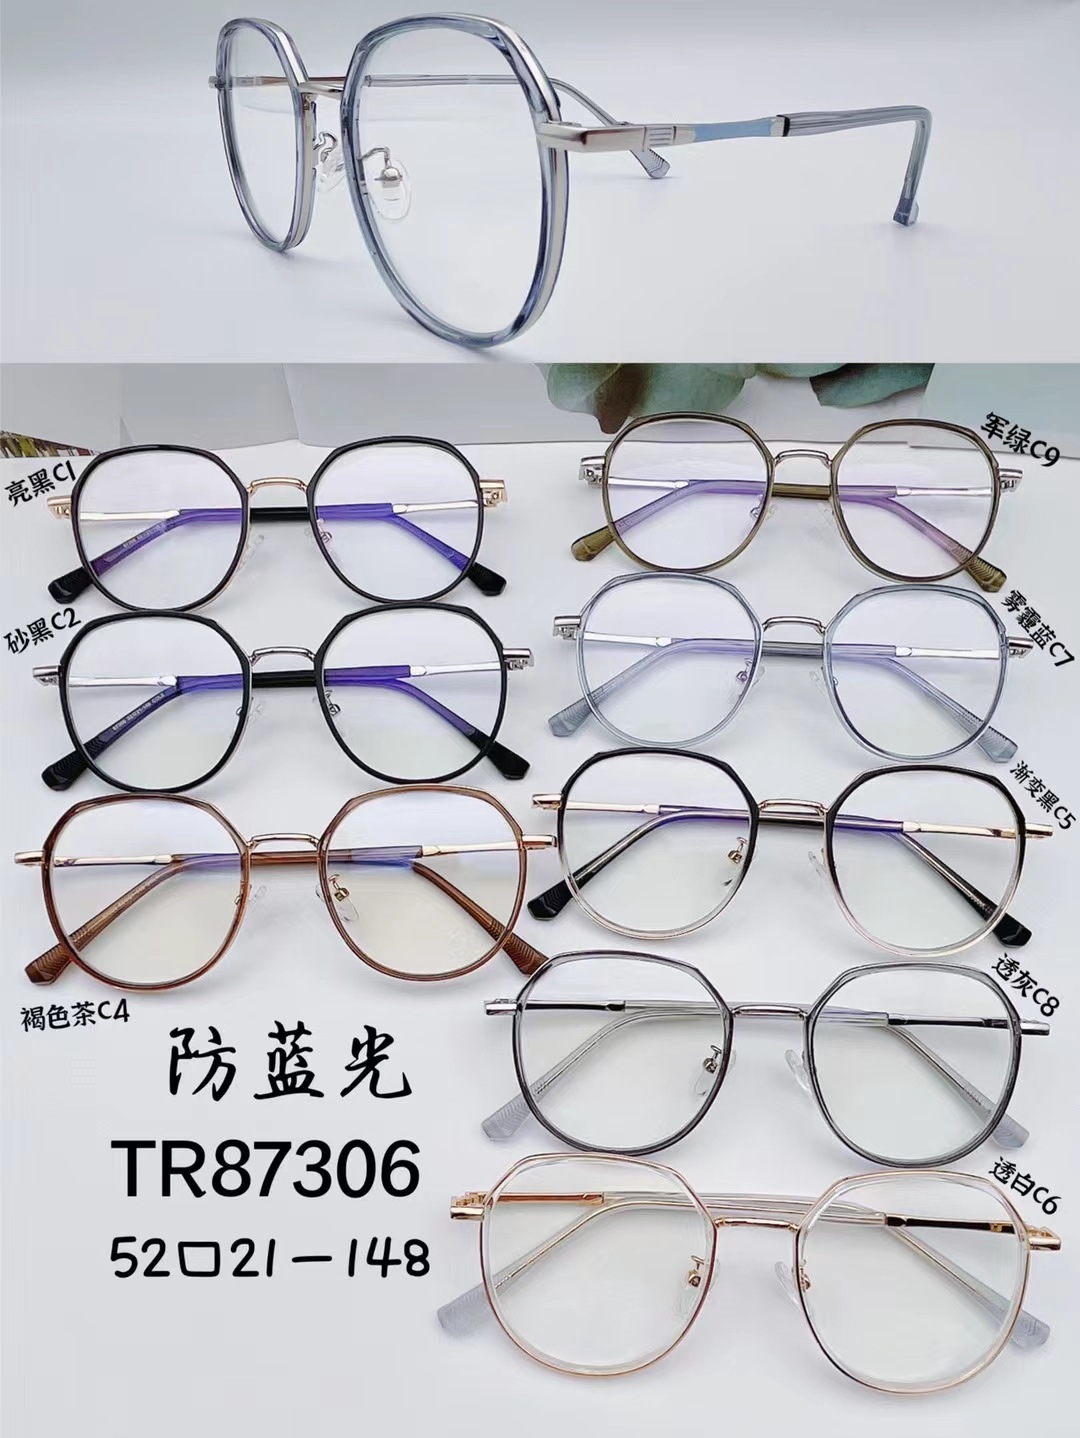 TR90套圈混搭合金眼镜防蓝光超轻舒适护目框快时尚个性美颜87306